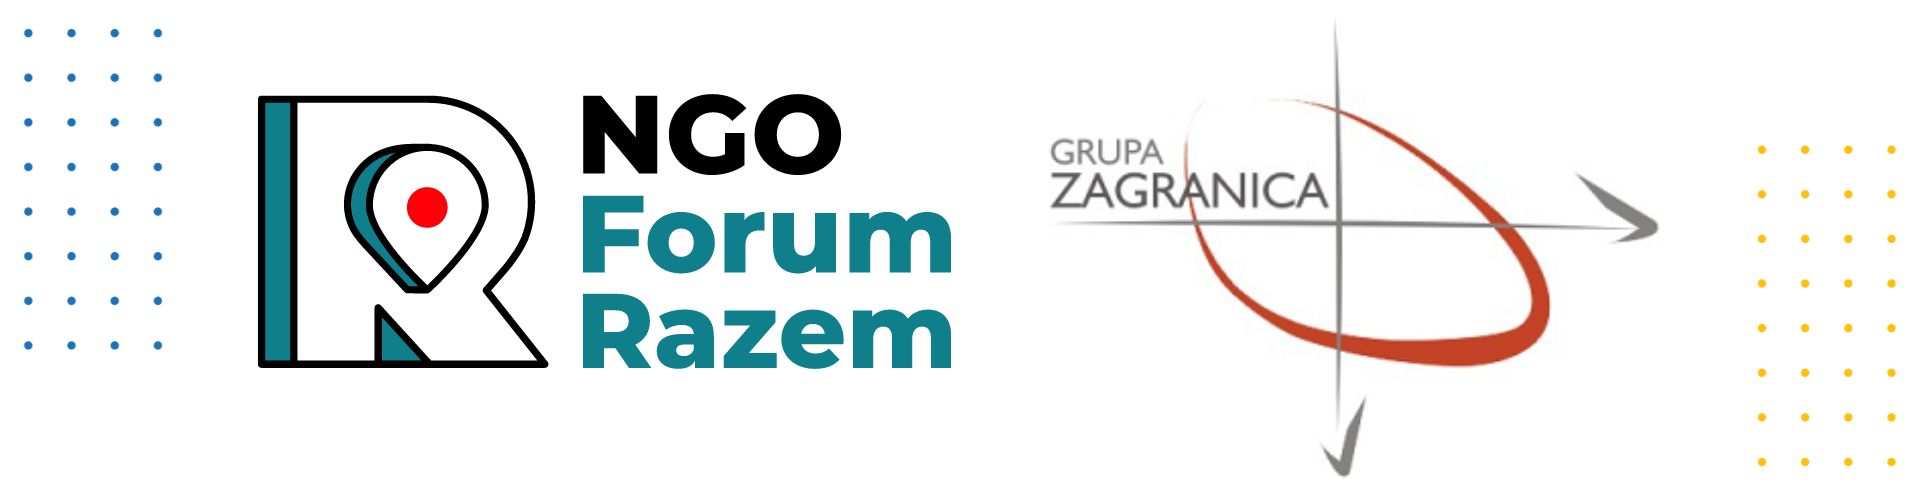 logotypy ngo forum razem grupa zangranica